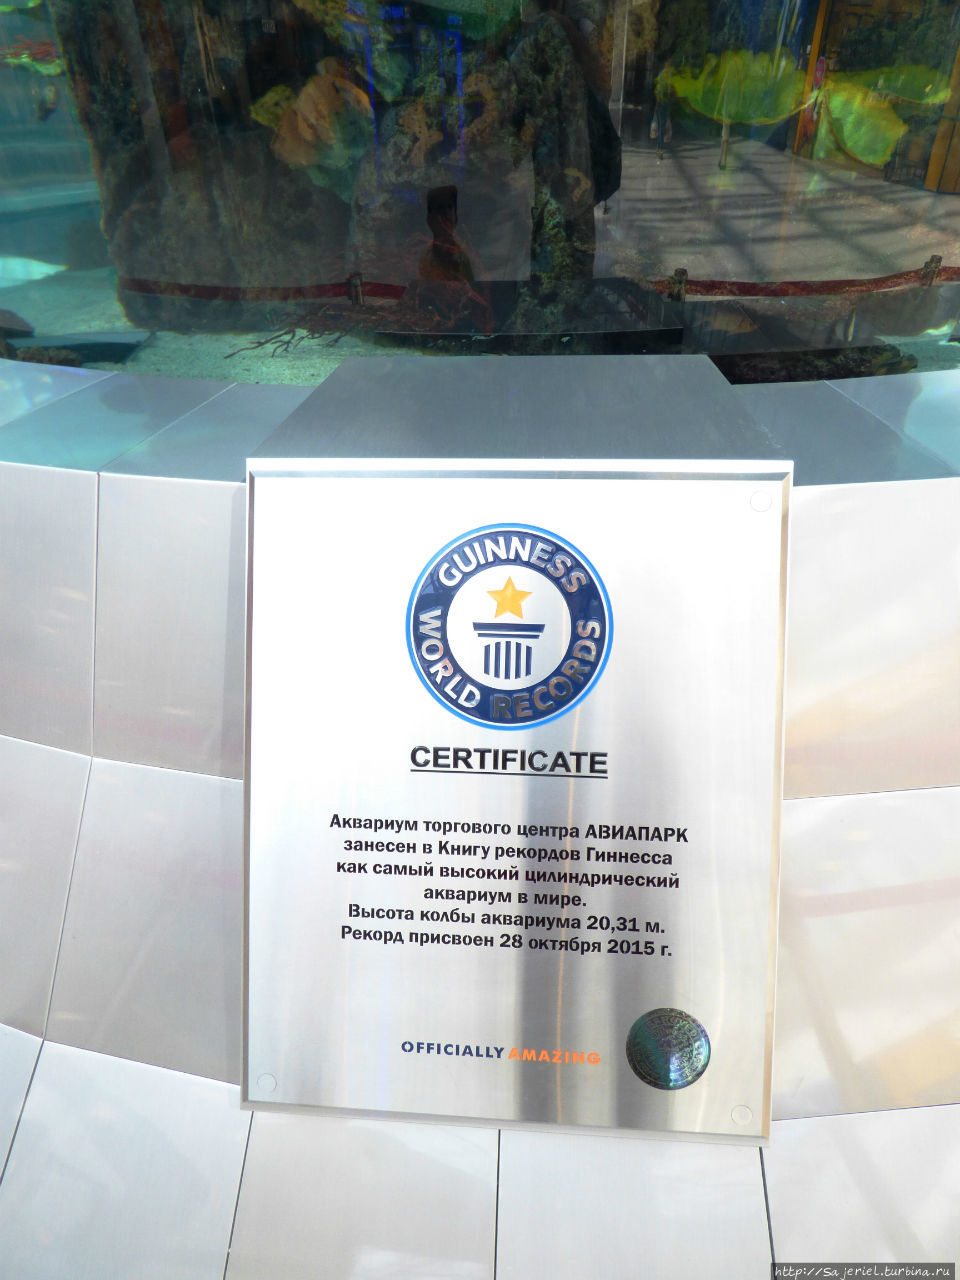 Самый высокий цилиндрический аквариум в мире Москва, Россия